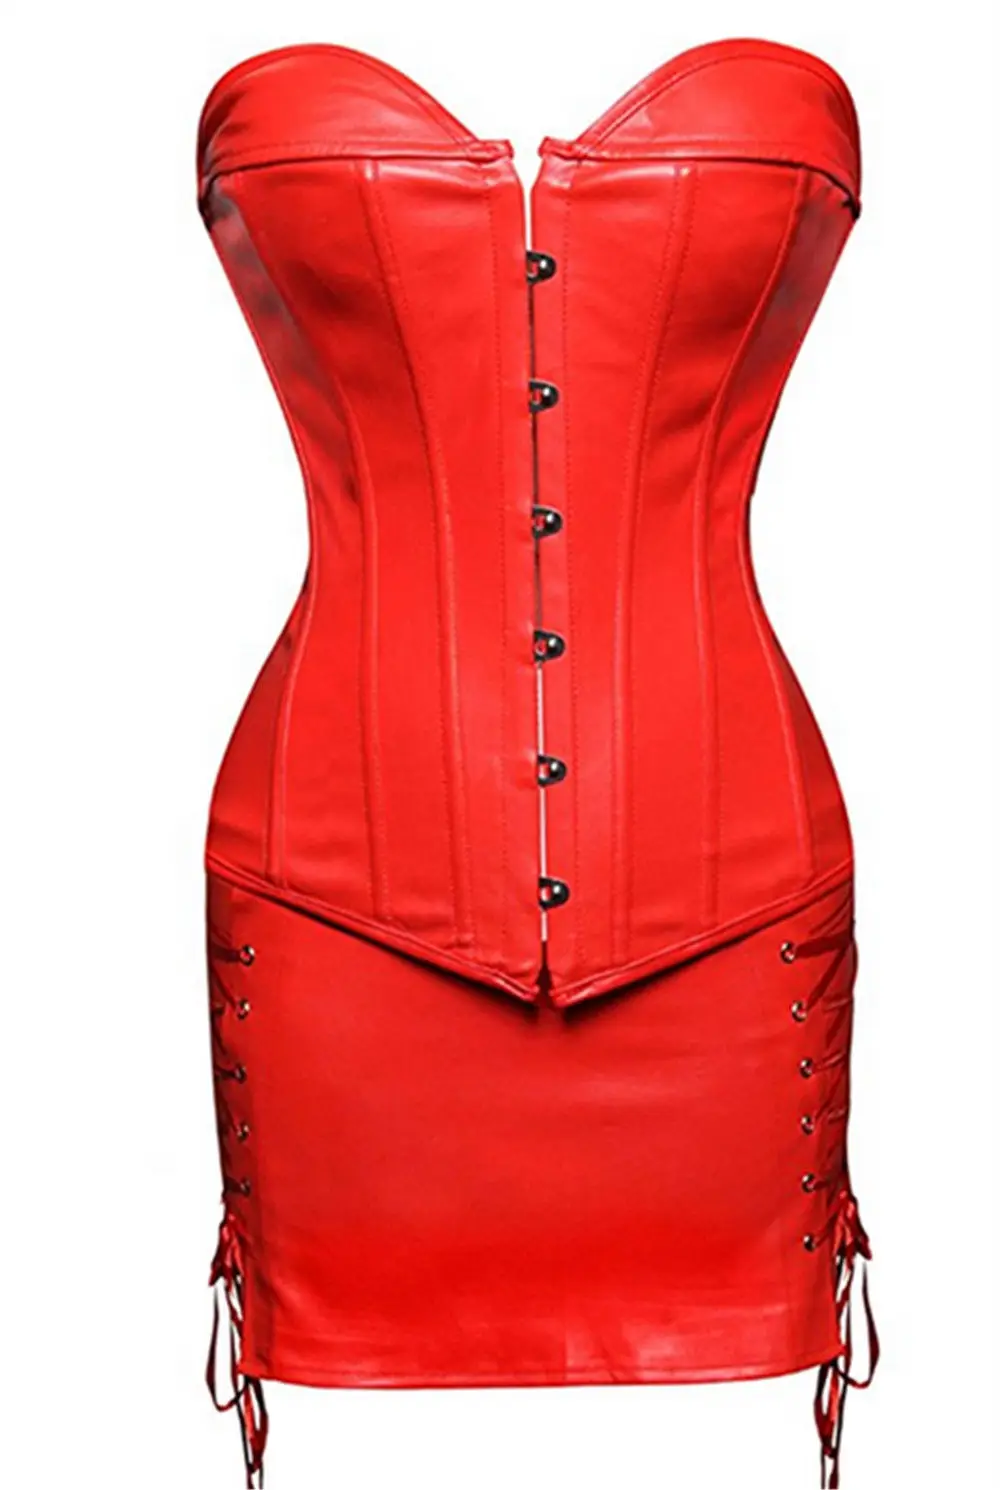 Стимпанк корсет сексуальное женское корсетное платье готическое боди шейпер мини-юбка платье без бретелек черная искусственная кожа овербюст размера плюс - Цвет: Красный